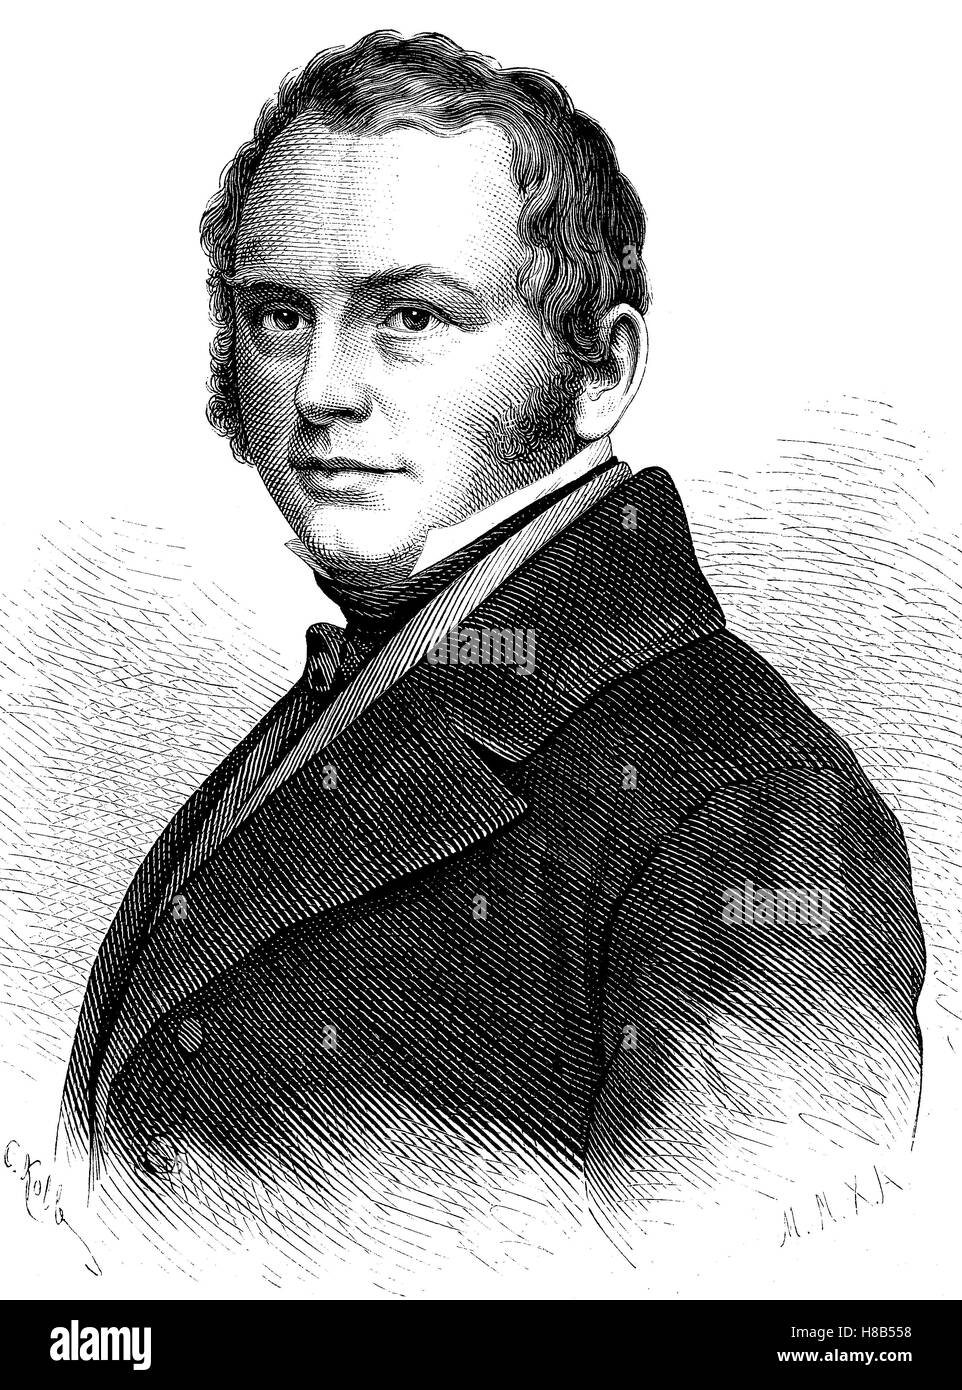 Benjamin Gustav Schwab, 19 juin 1792 - 4 novembre 1850, était un écrivain allemand, pasteur et à l'éditeur., gravure sur bois de 1892 Banque D'Images